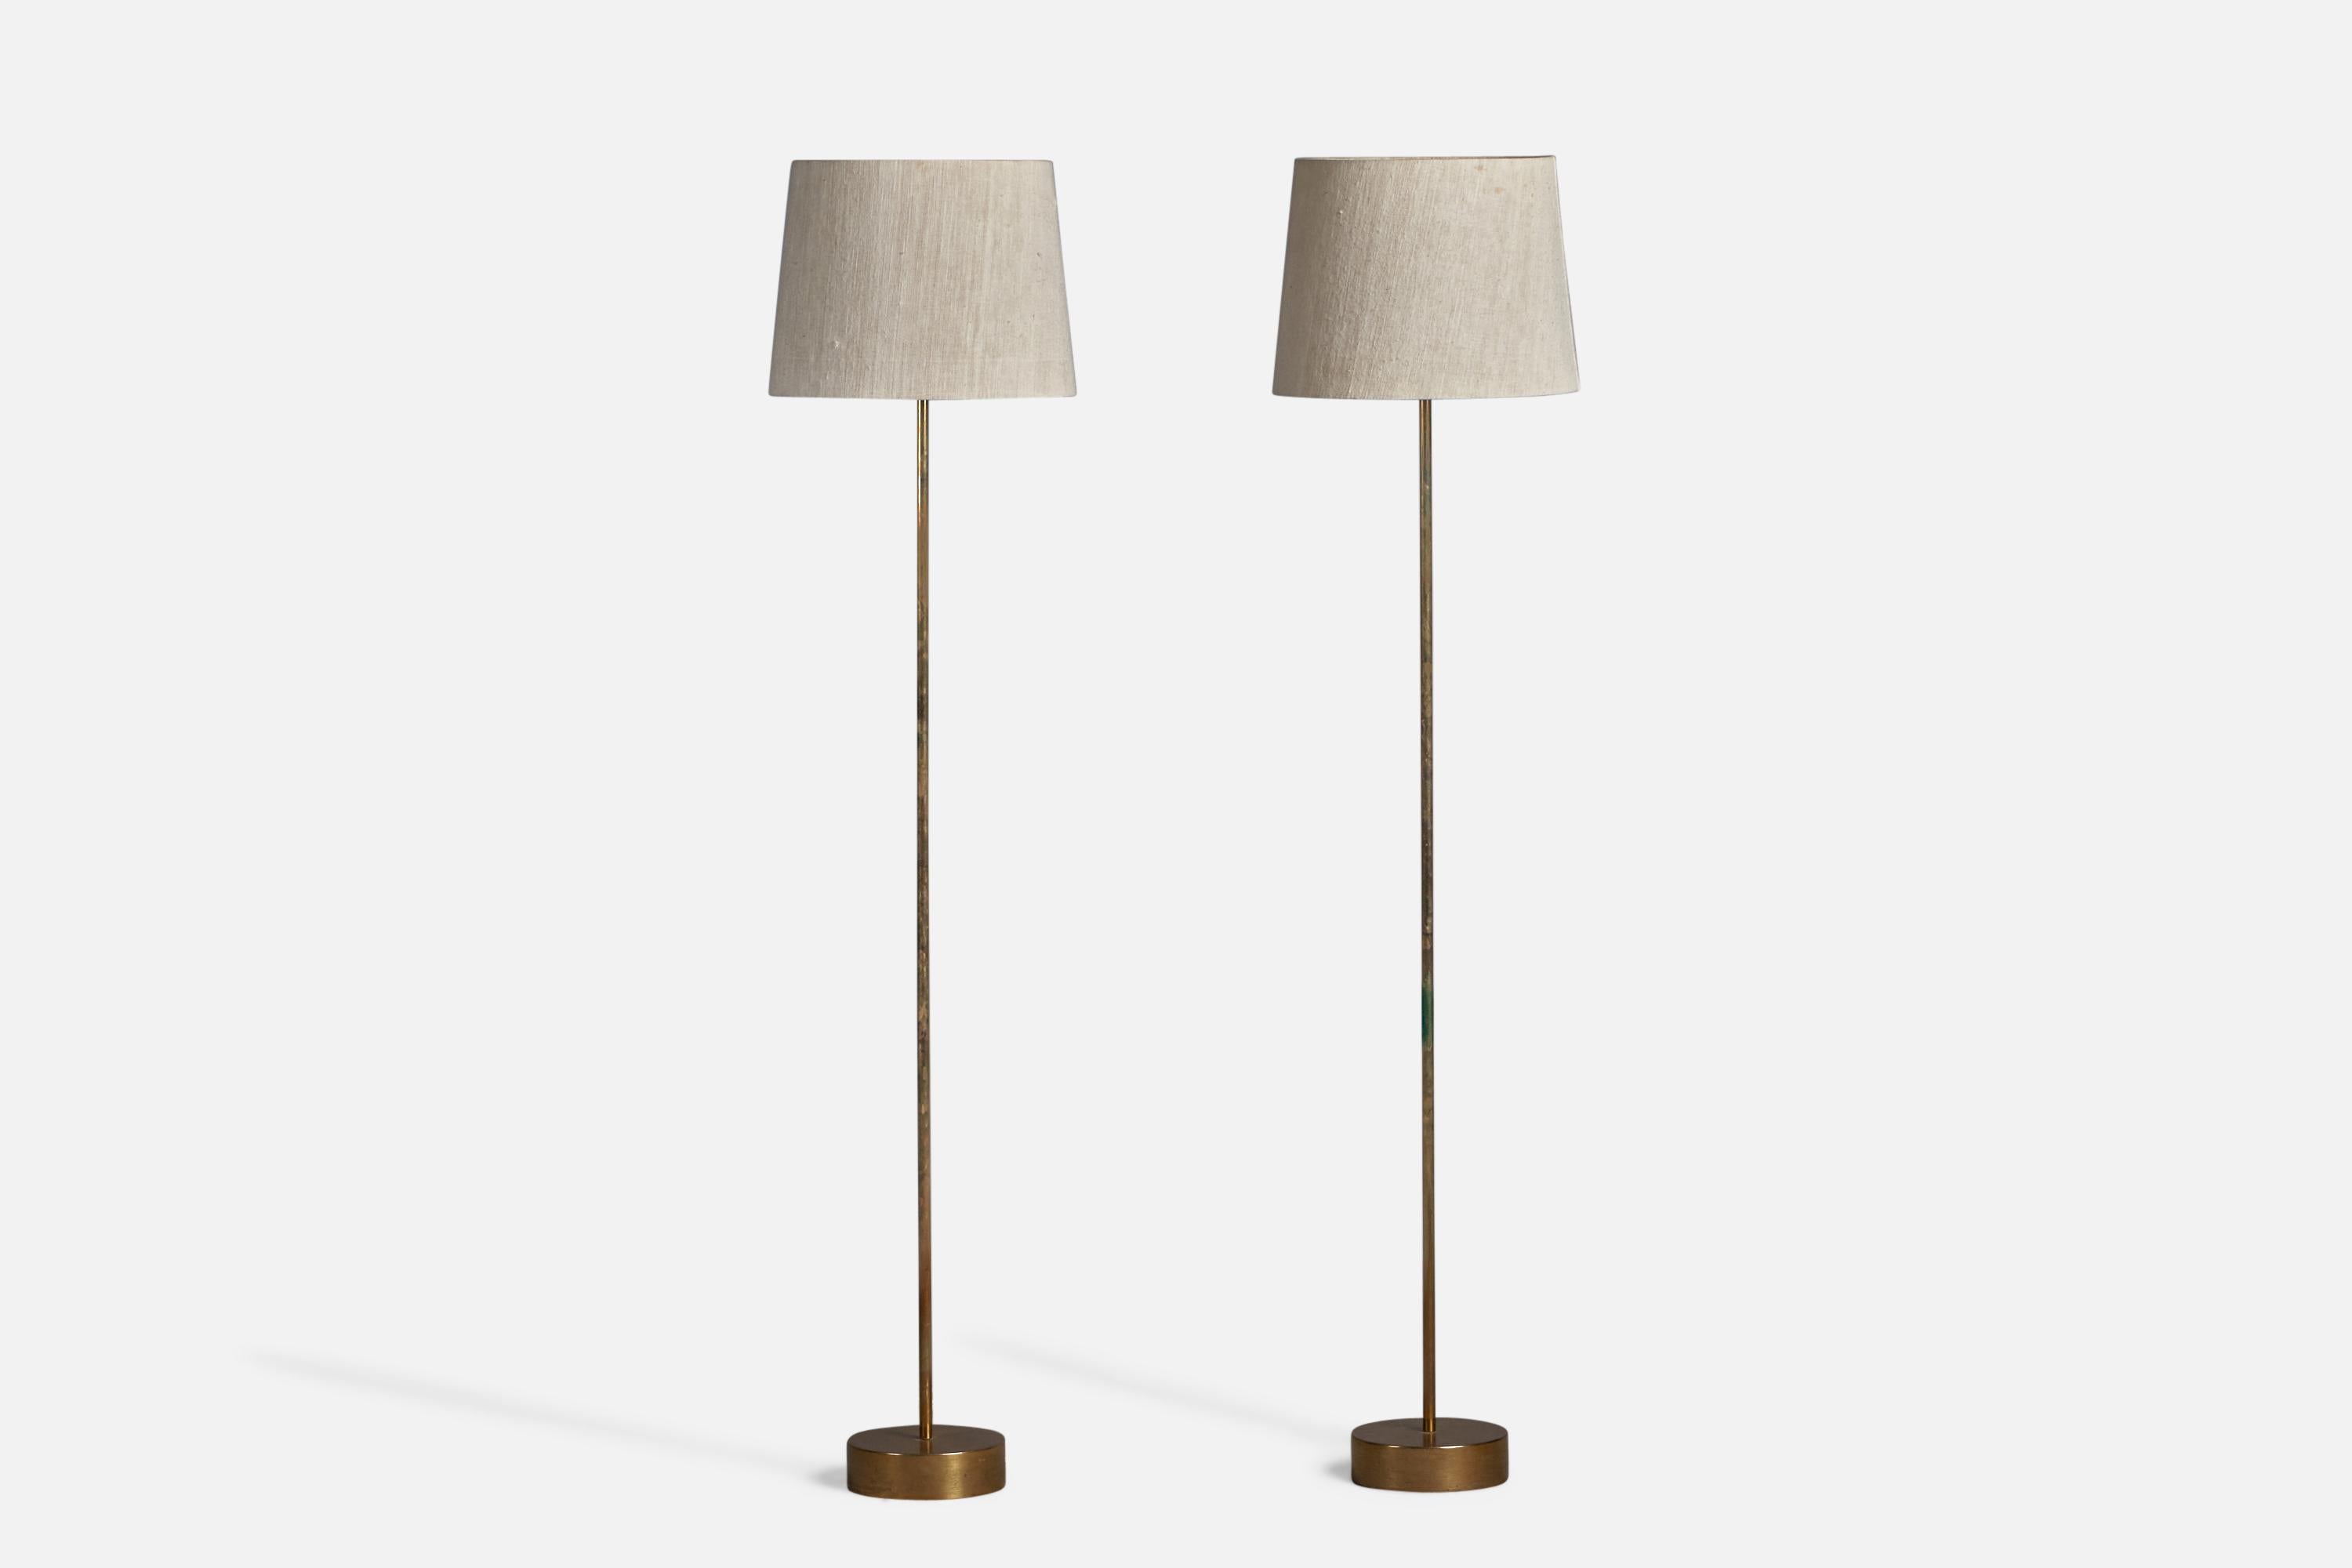 Ein Paar Stehlampen aus Messing, Acryl und gewebtem hellbeigem Stoff, entworfen und hergestellt in Schweden, 1950er Jahre.

Gesamtabmessungen (Zoll): 55,25